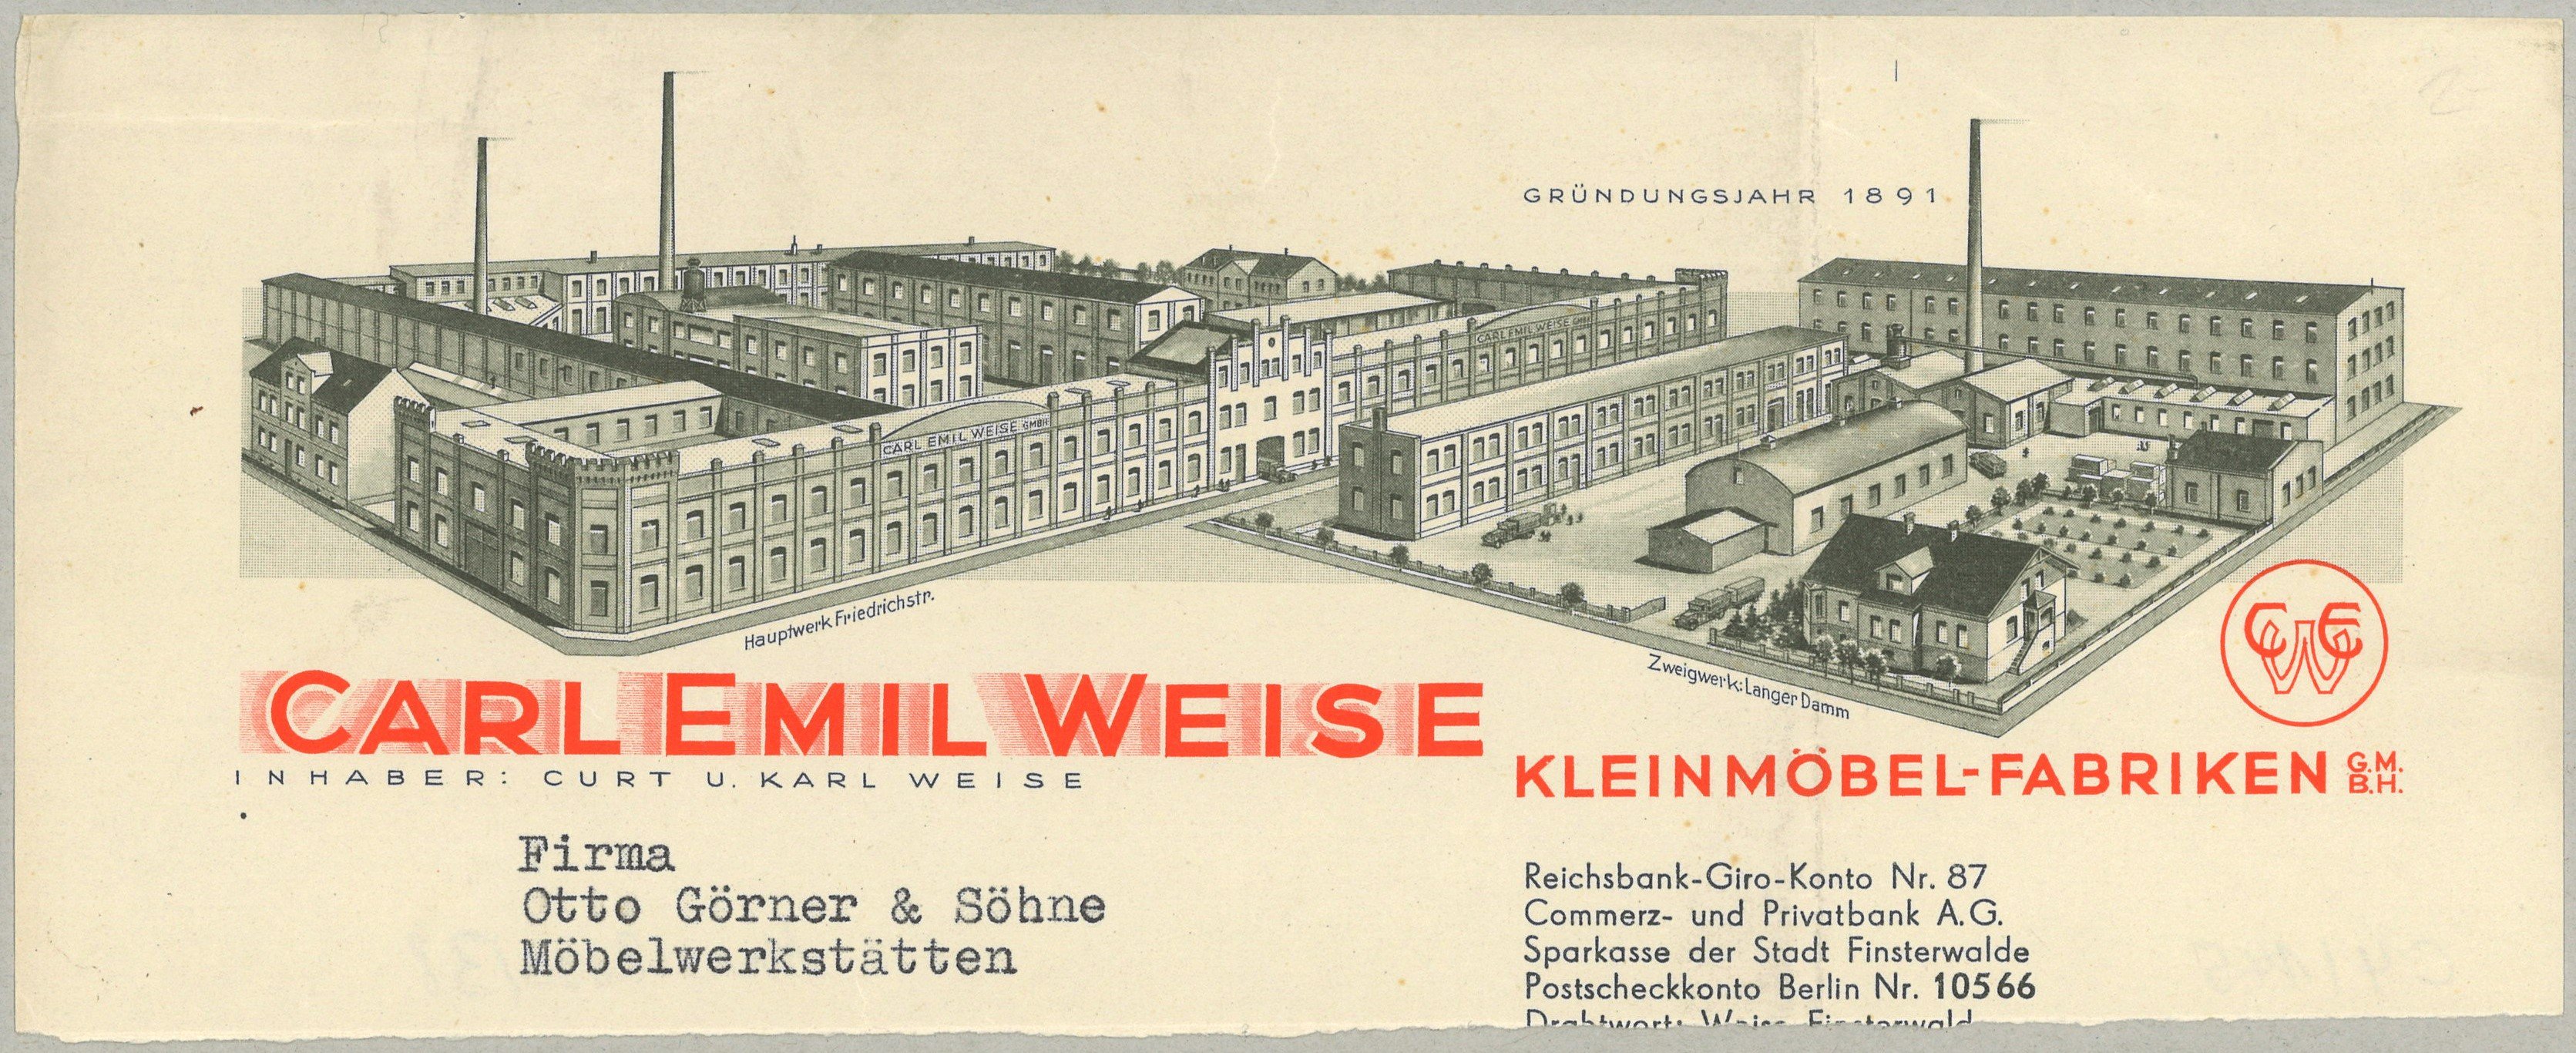 Briefkopf der Kleinmöbelfabriken Carl Emil Weise in Finsterwalde (ca. 1930) (Landesgeschichtliche Vereinigung für die Mark Brandenburg e.V., Archiv CC BY)